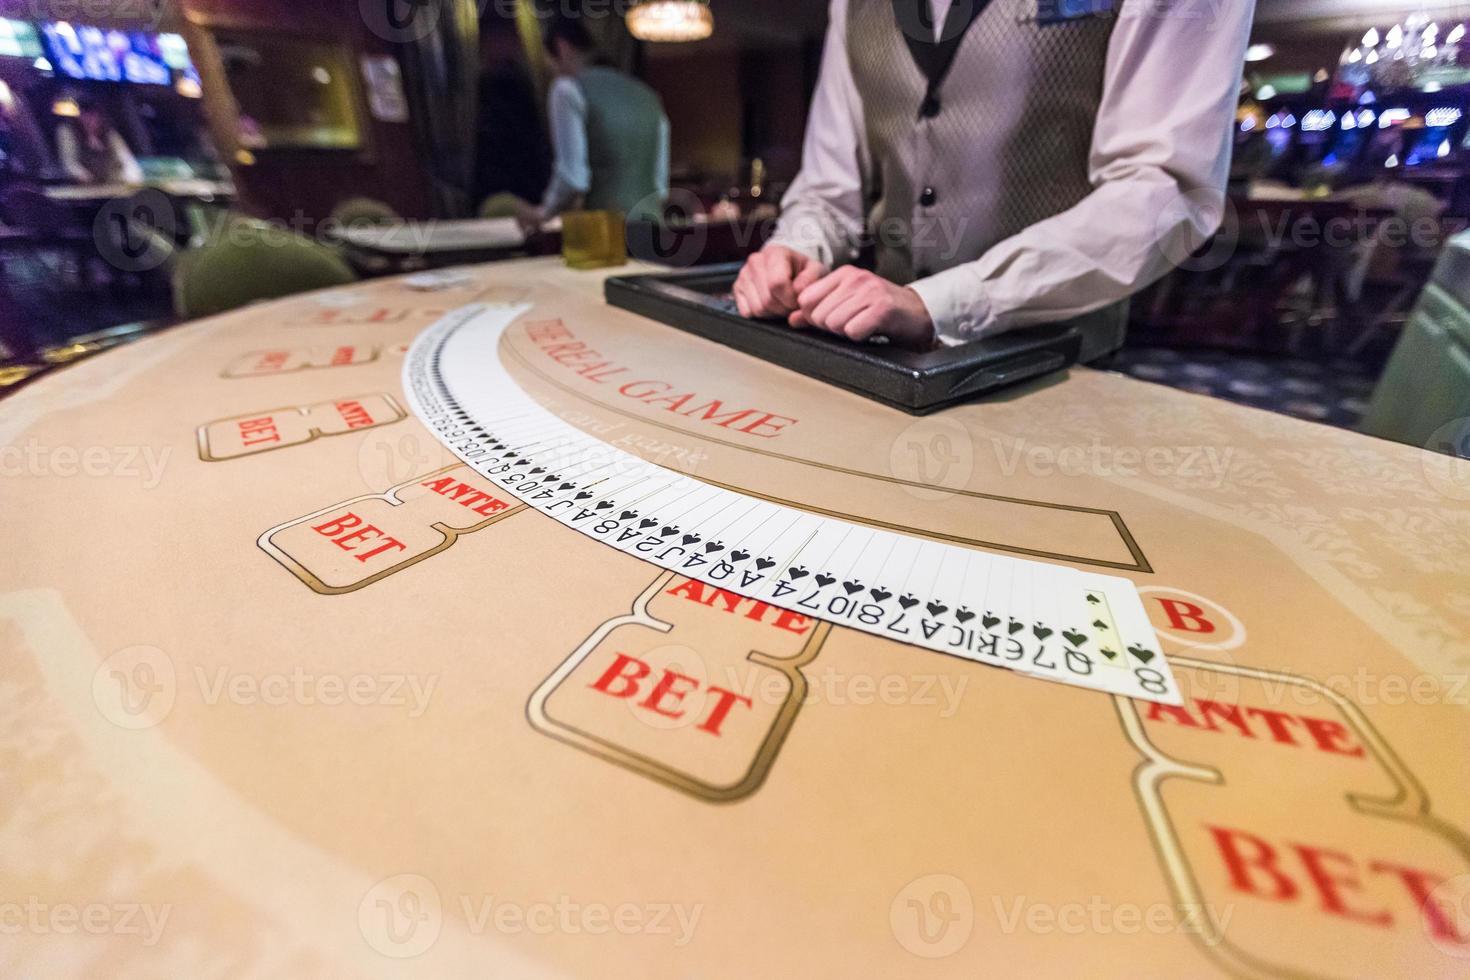 speelpenningen en kaarten op een speeltafel roulette foto